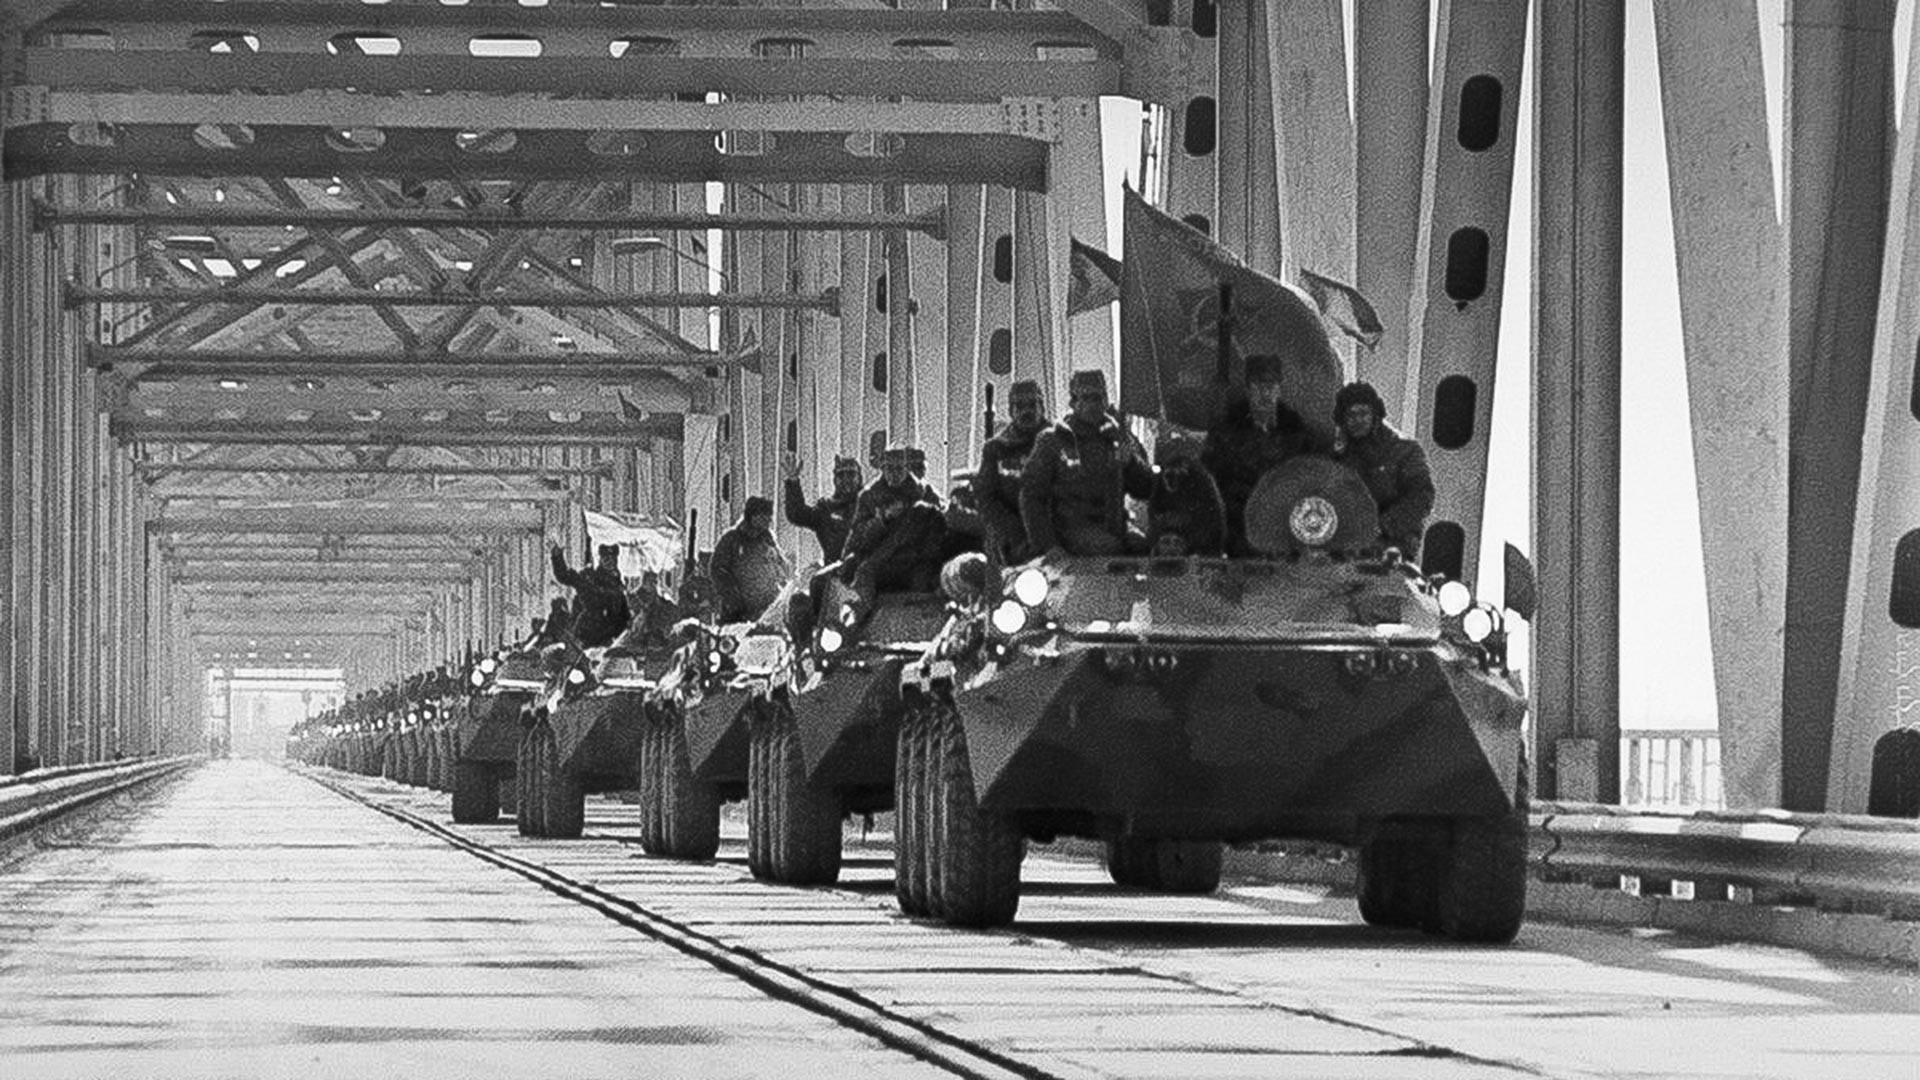 Soviet troops leaving Afghanistan.